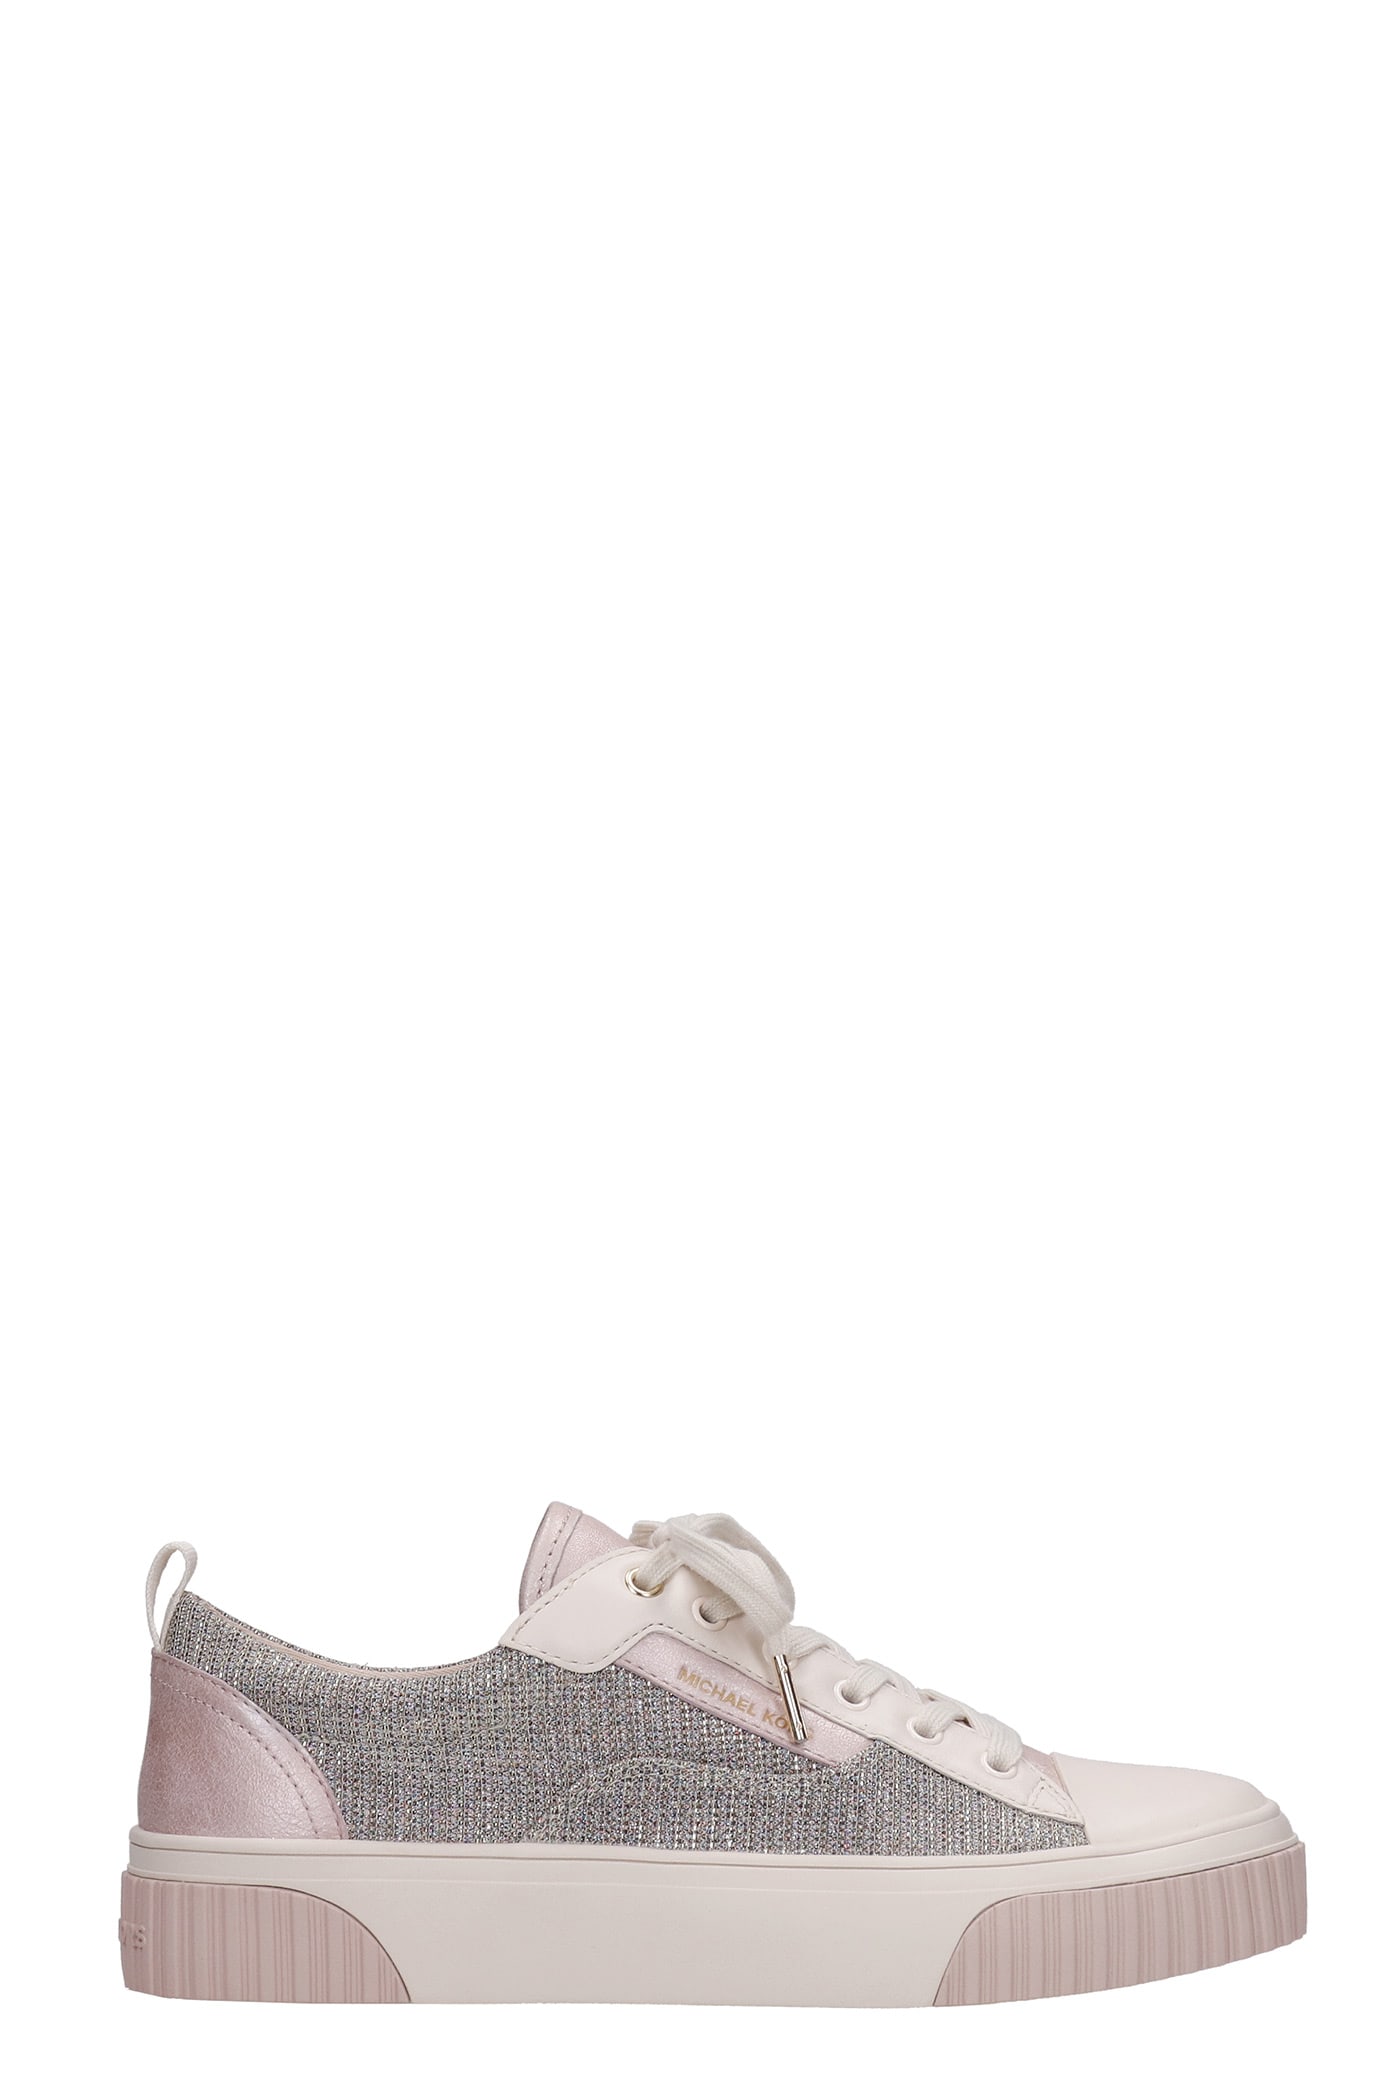 Michael Kors Oscar Sneakers In Rose-pink Fabric